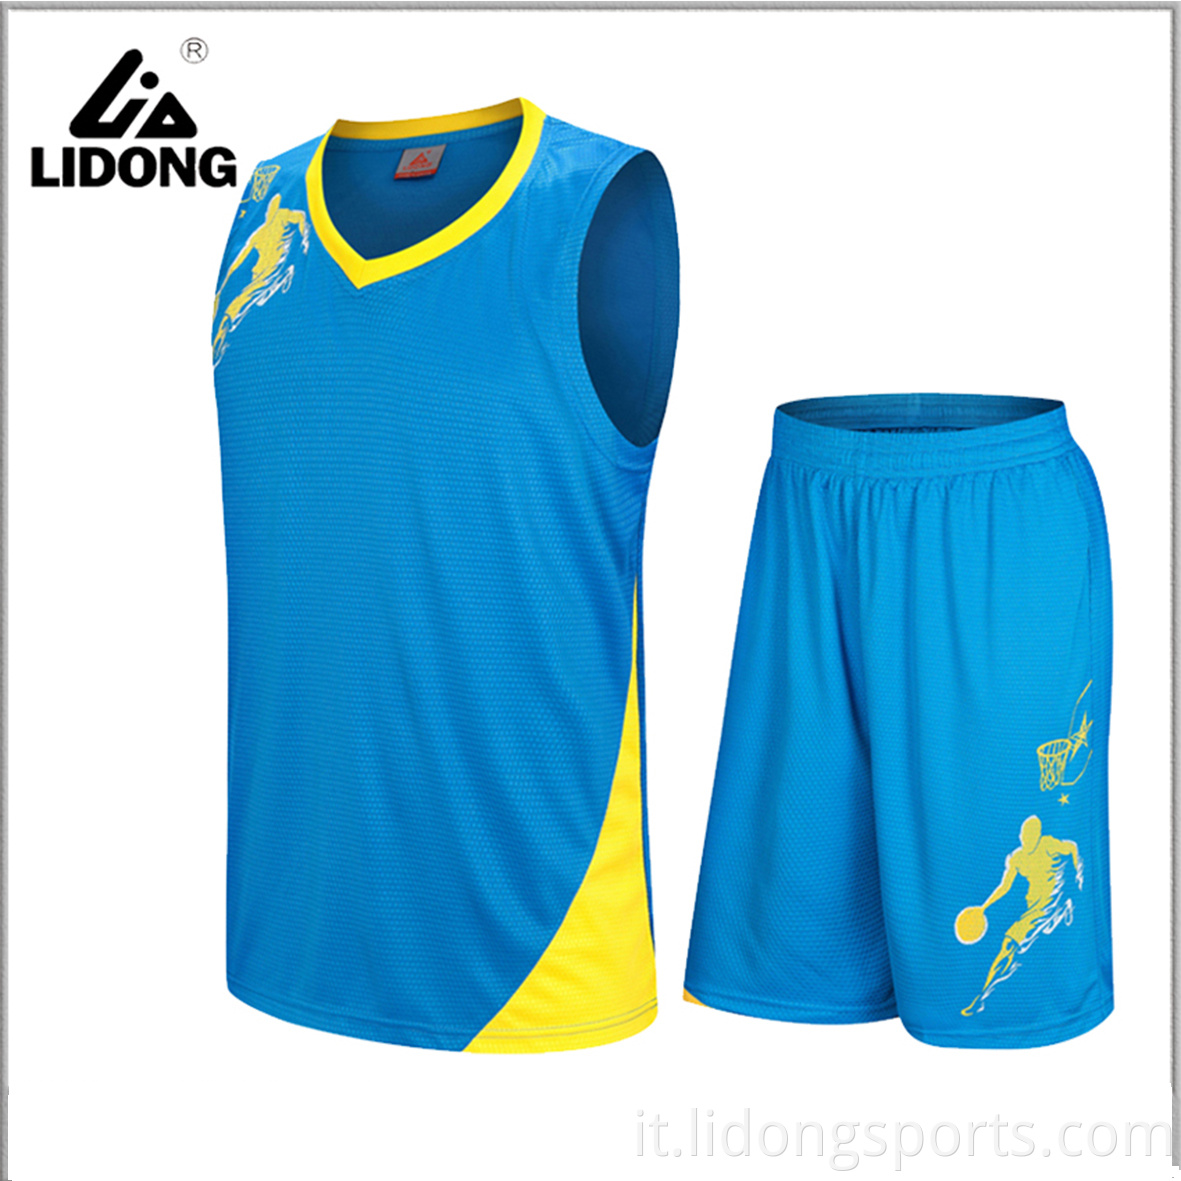 Nuove uniformi di basket all'ingrosso e uniformi da basket per adulti fatti su misura unisex